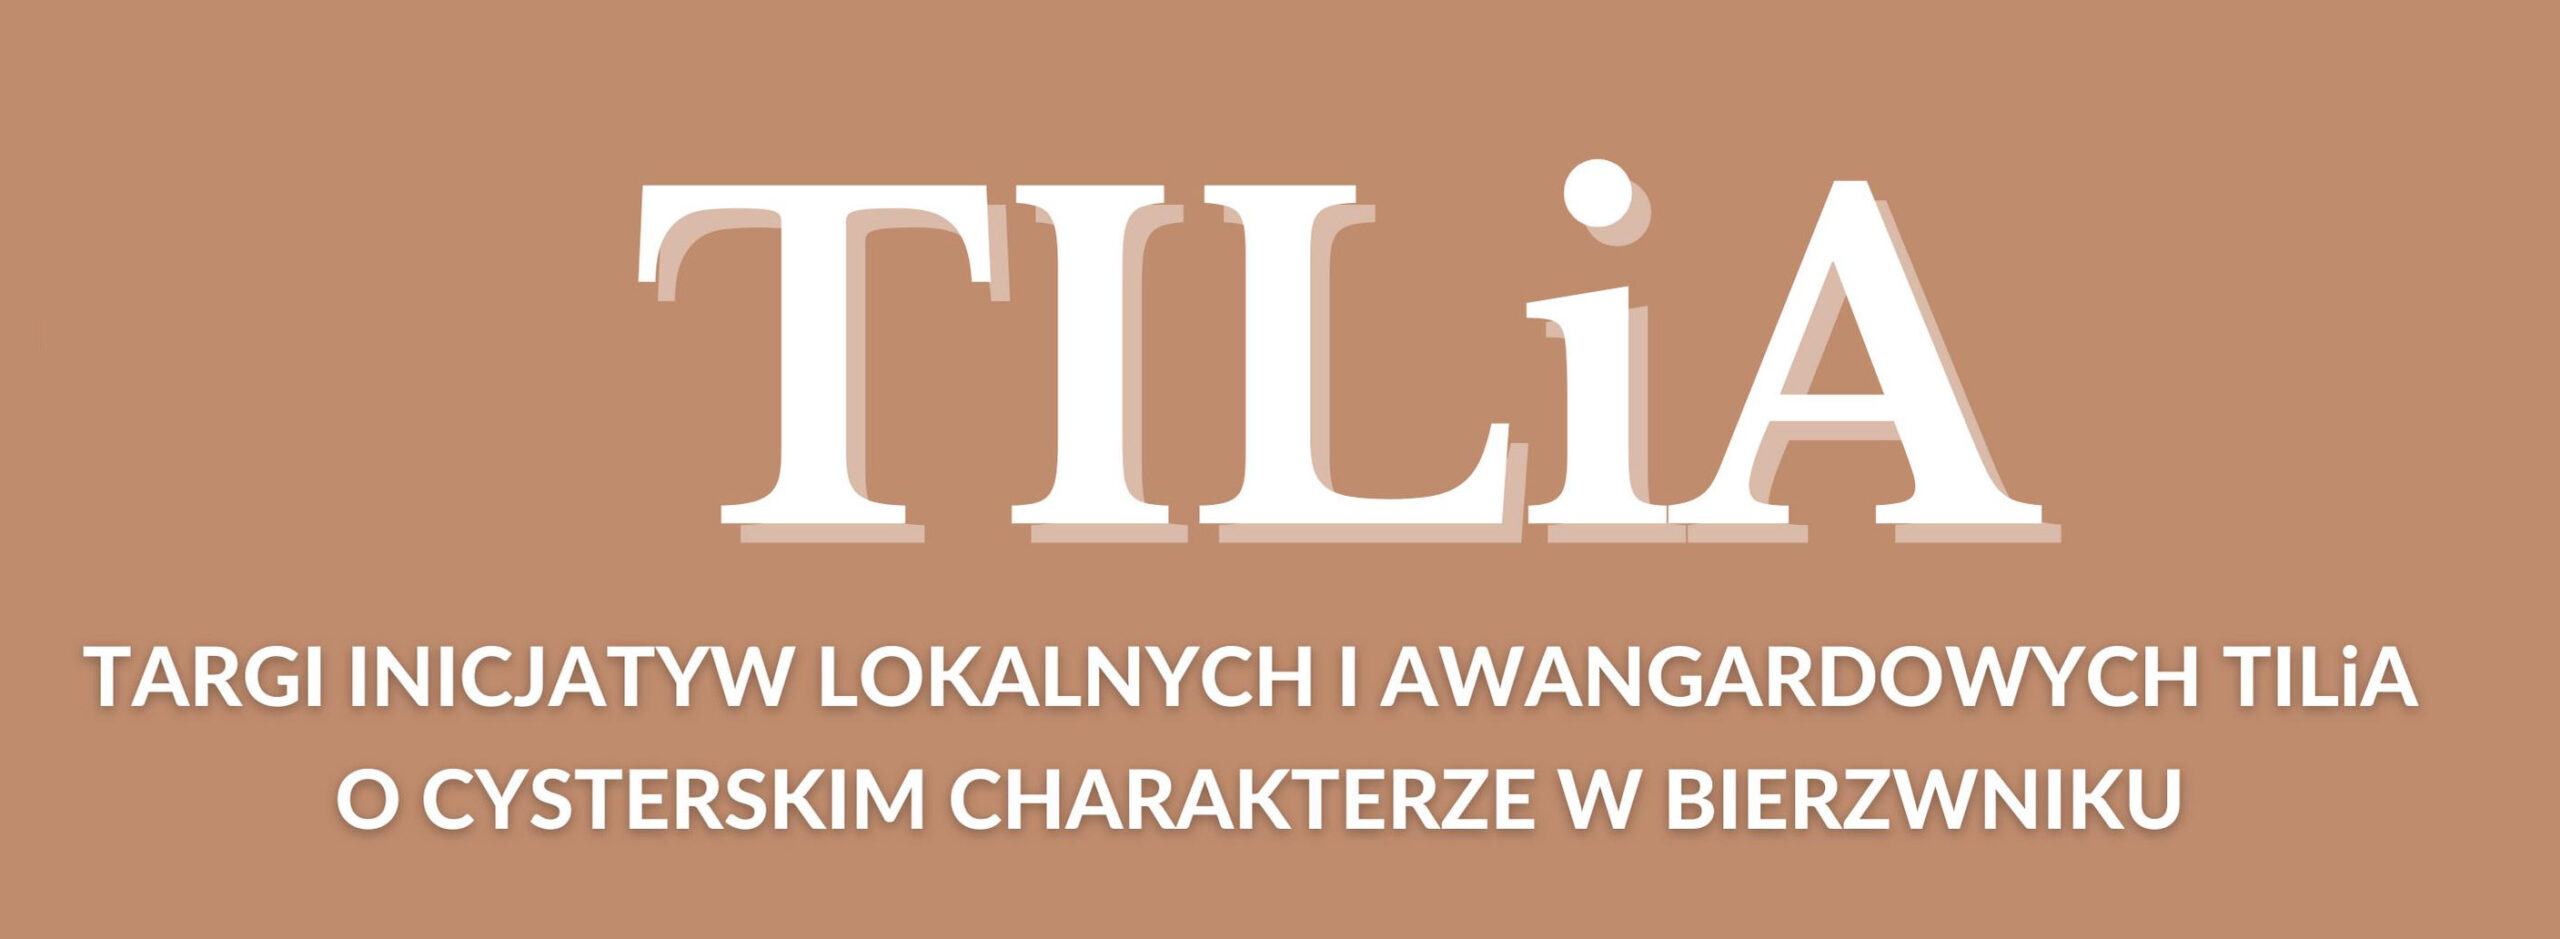 TILiA" Targi Inicjatyw Lokalnych i Awangardowych